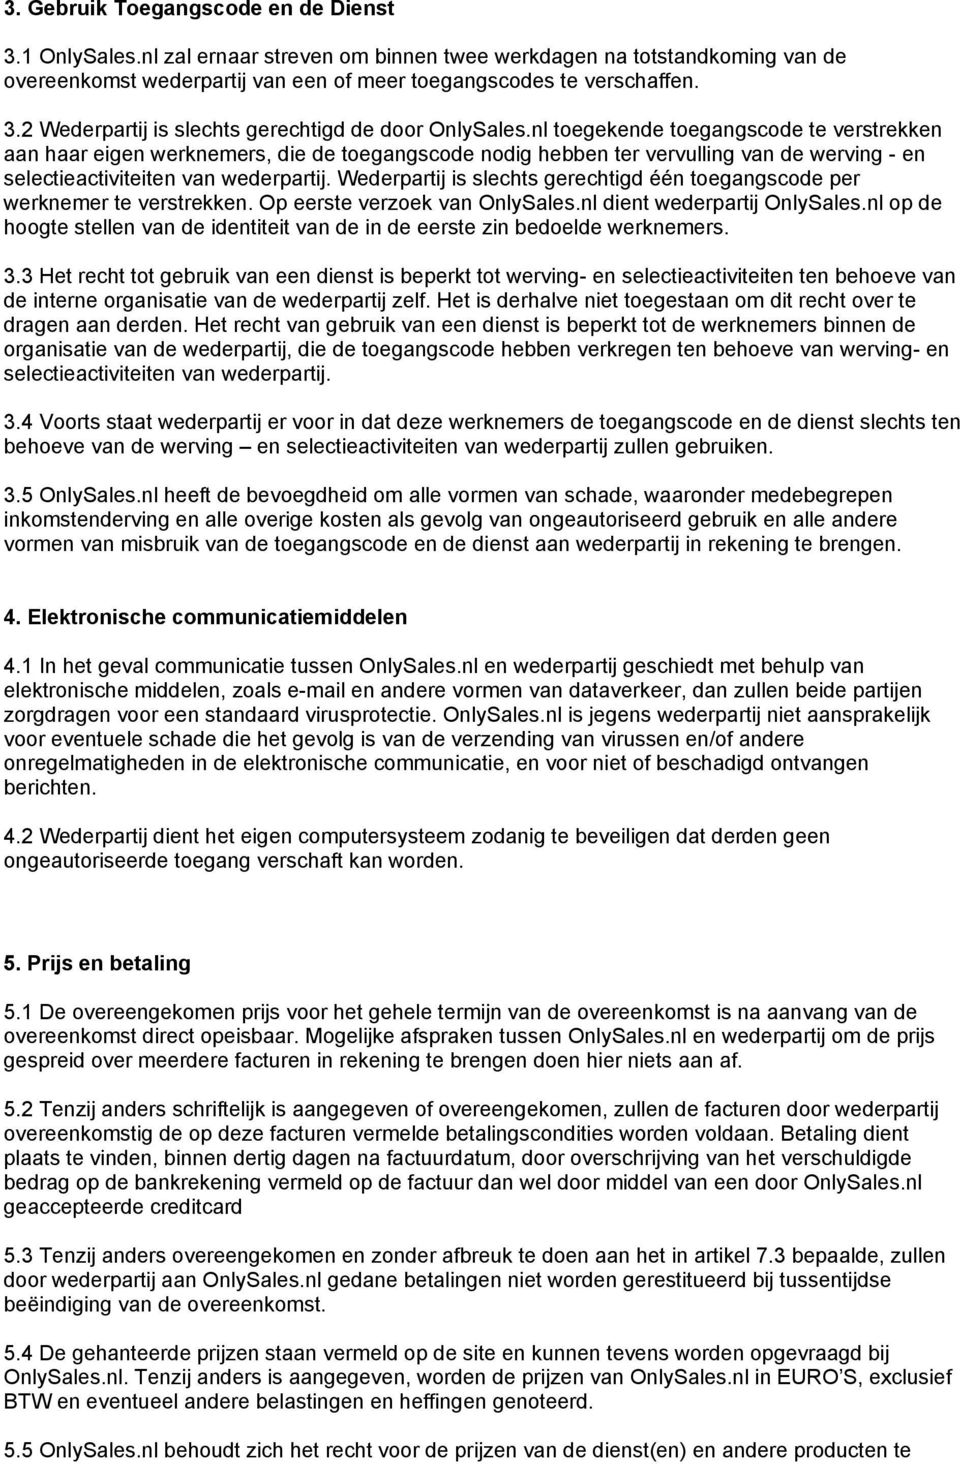 Wederpartij is slechts gerechtigd één toegangscode per werknemer te verstrekken. Op eerste verzoek van OnlySales.nl dient wederpartij OnlySales.